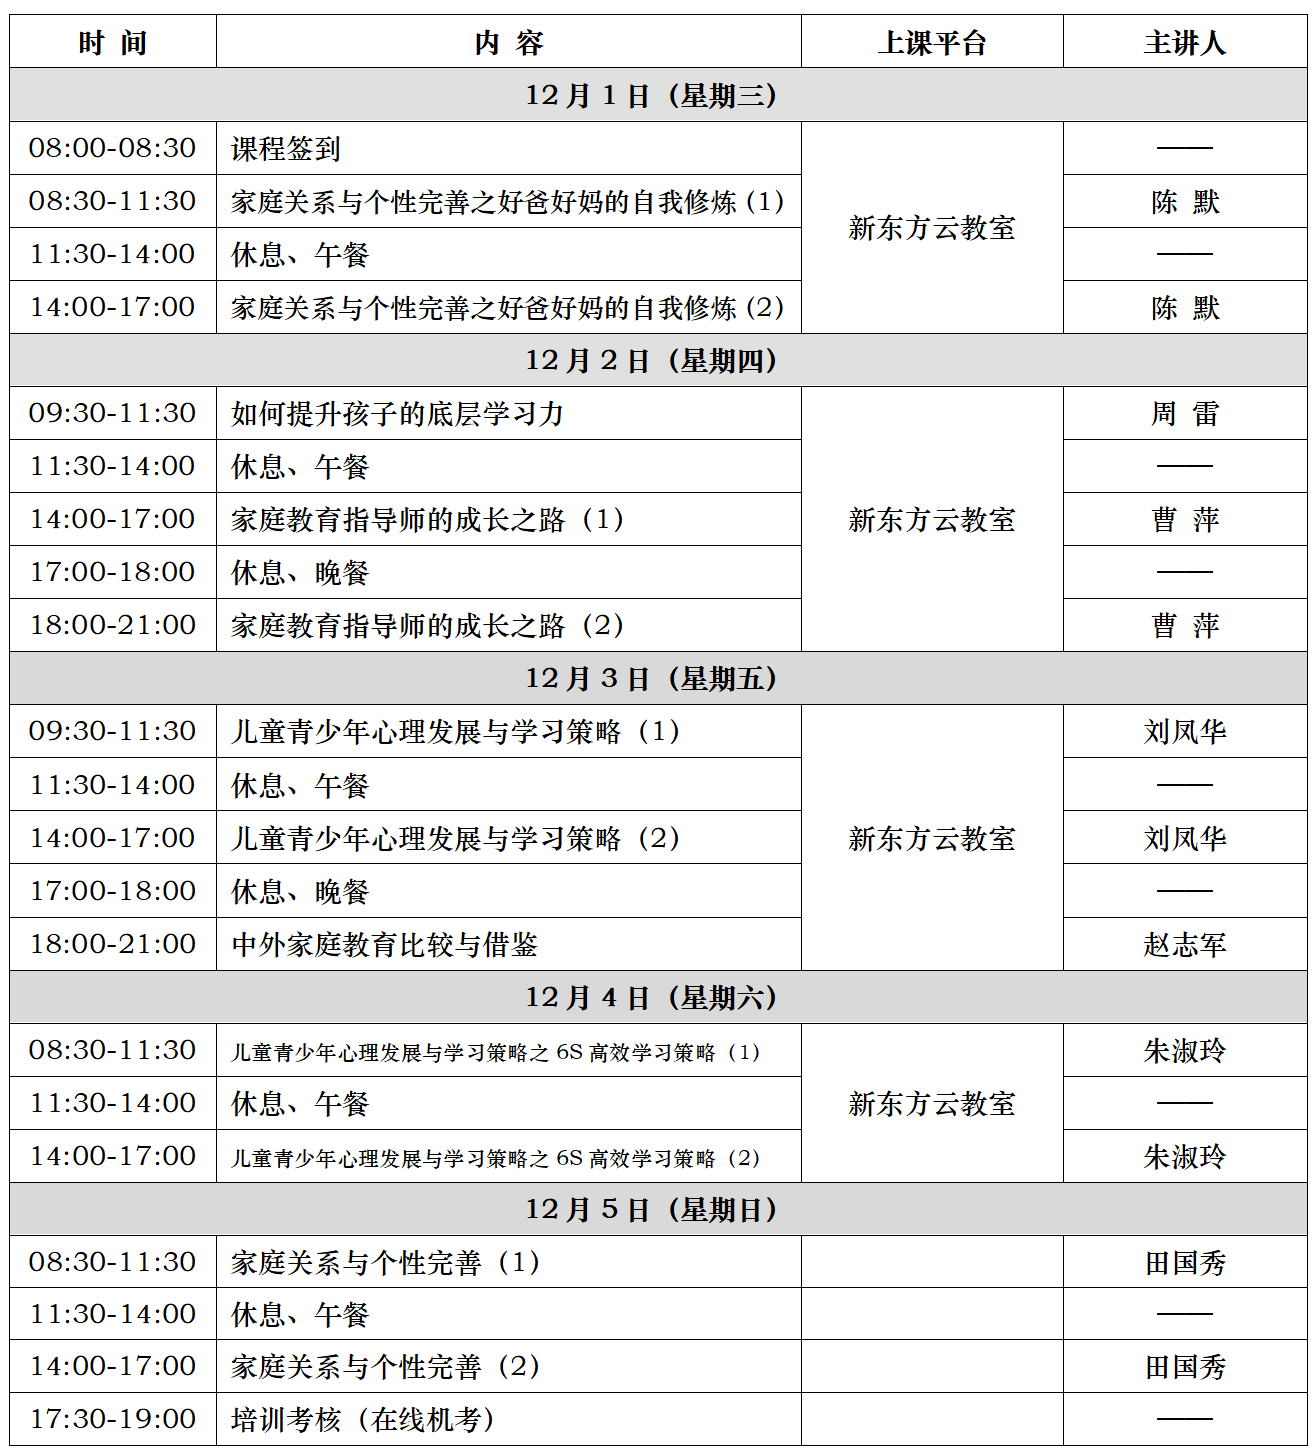 附件1：新東方第123期家庭教育指導師培訓議程(12.01-12.05).png